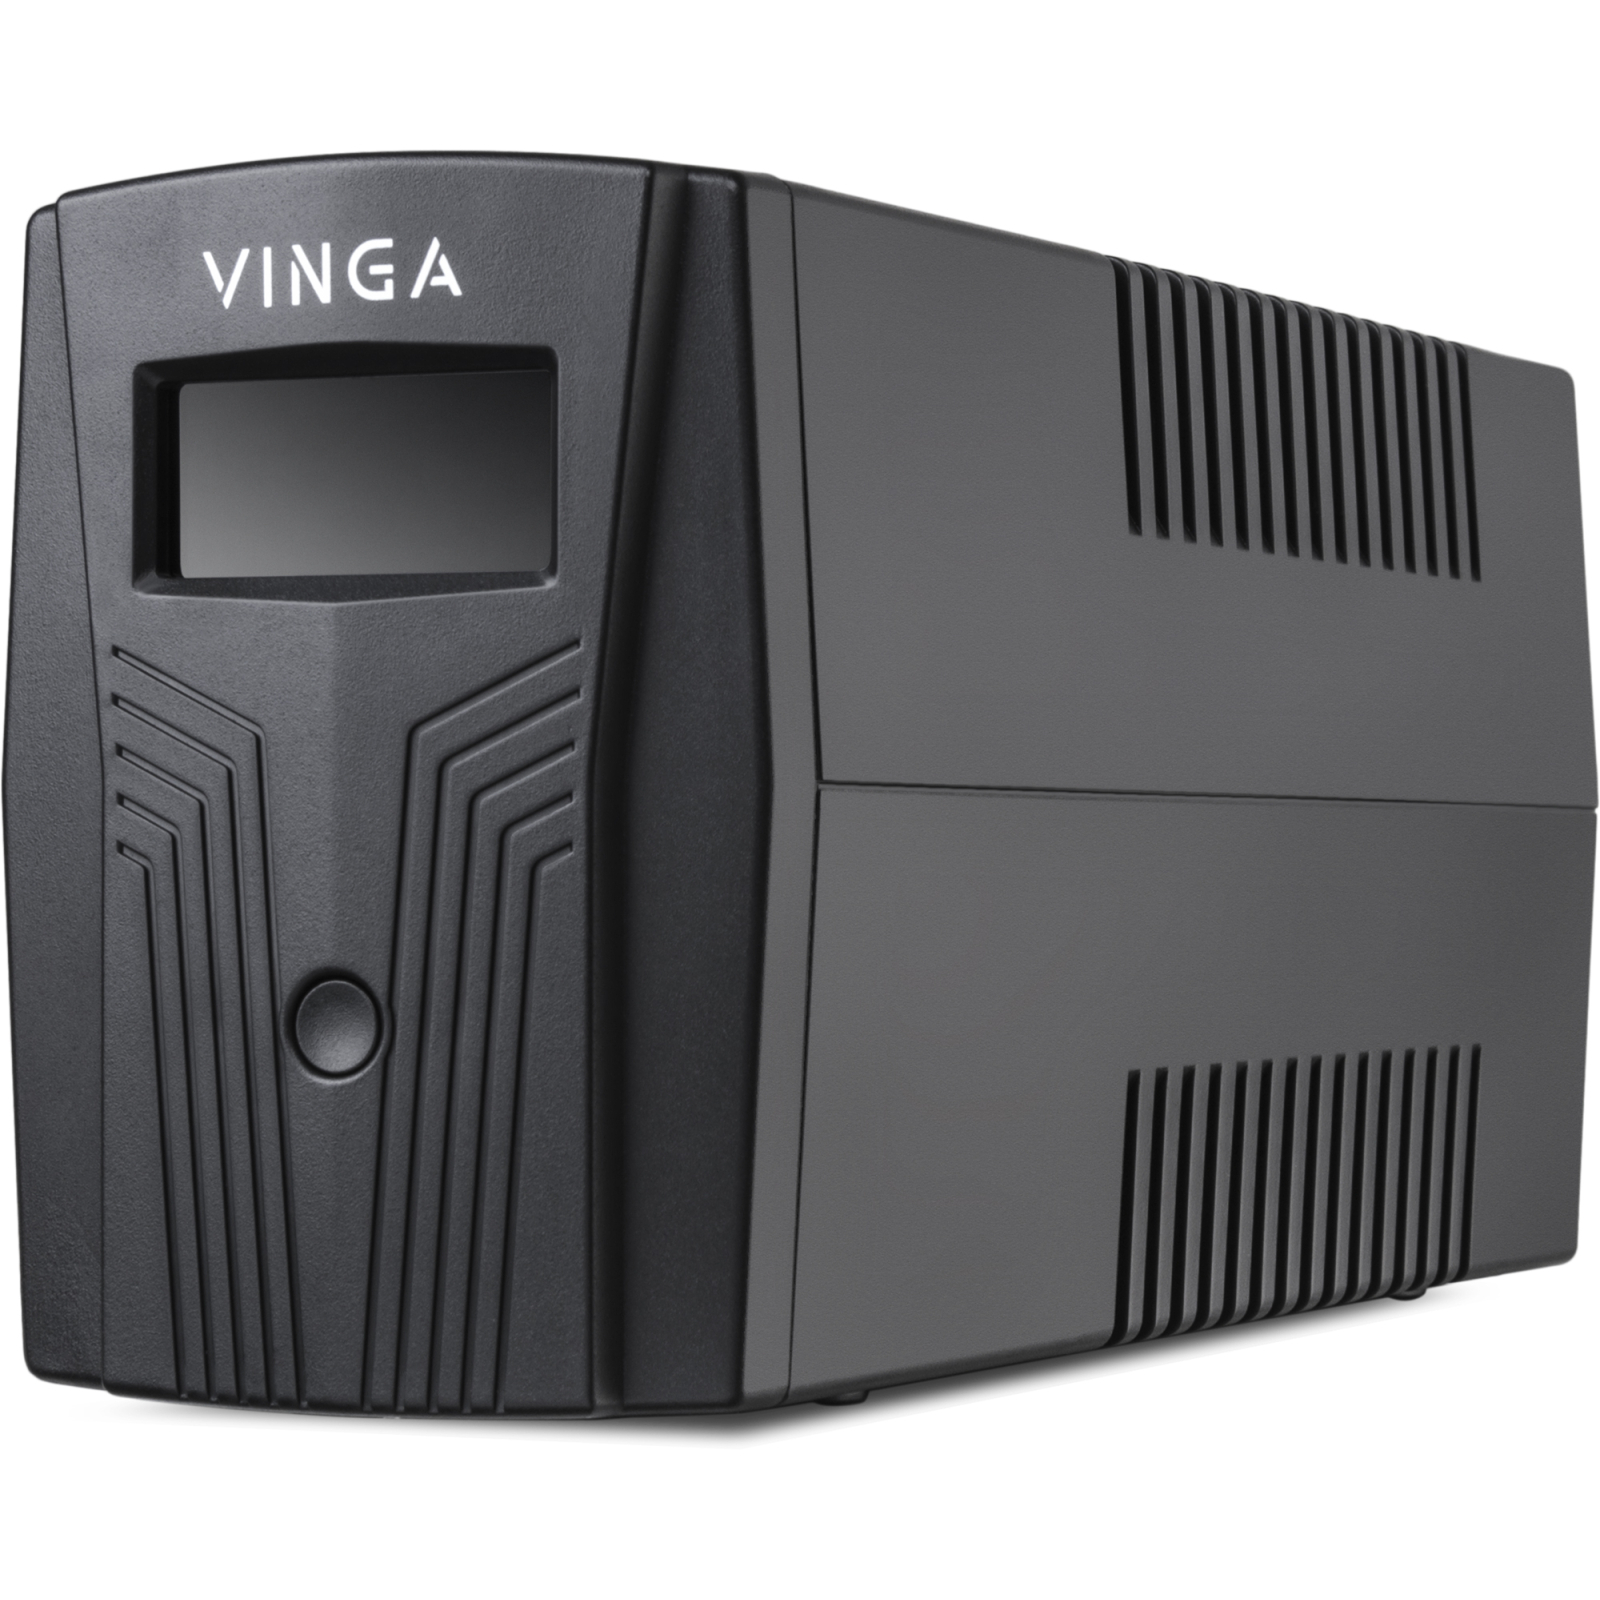 Источник бесперебойного питания Vinga LCD 600VA plastic case (VPC-600P) изображение 4